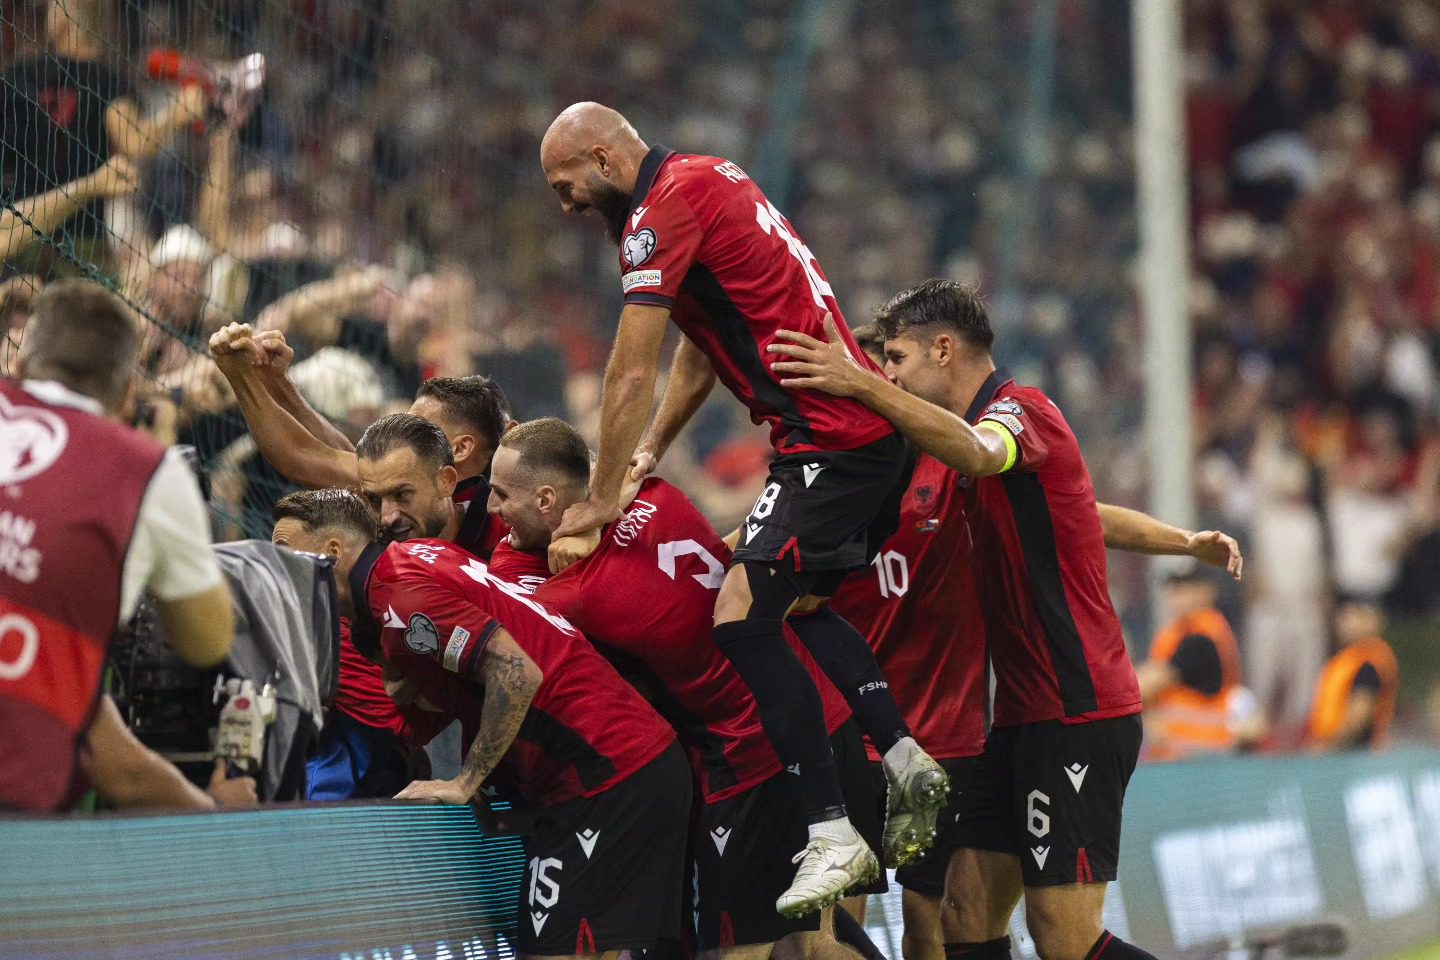 FSHF shpërblen me 4.5 milionë euro futbollistët e Shqipërisë pas fitores me Çekinë